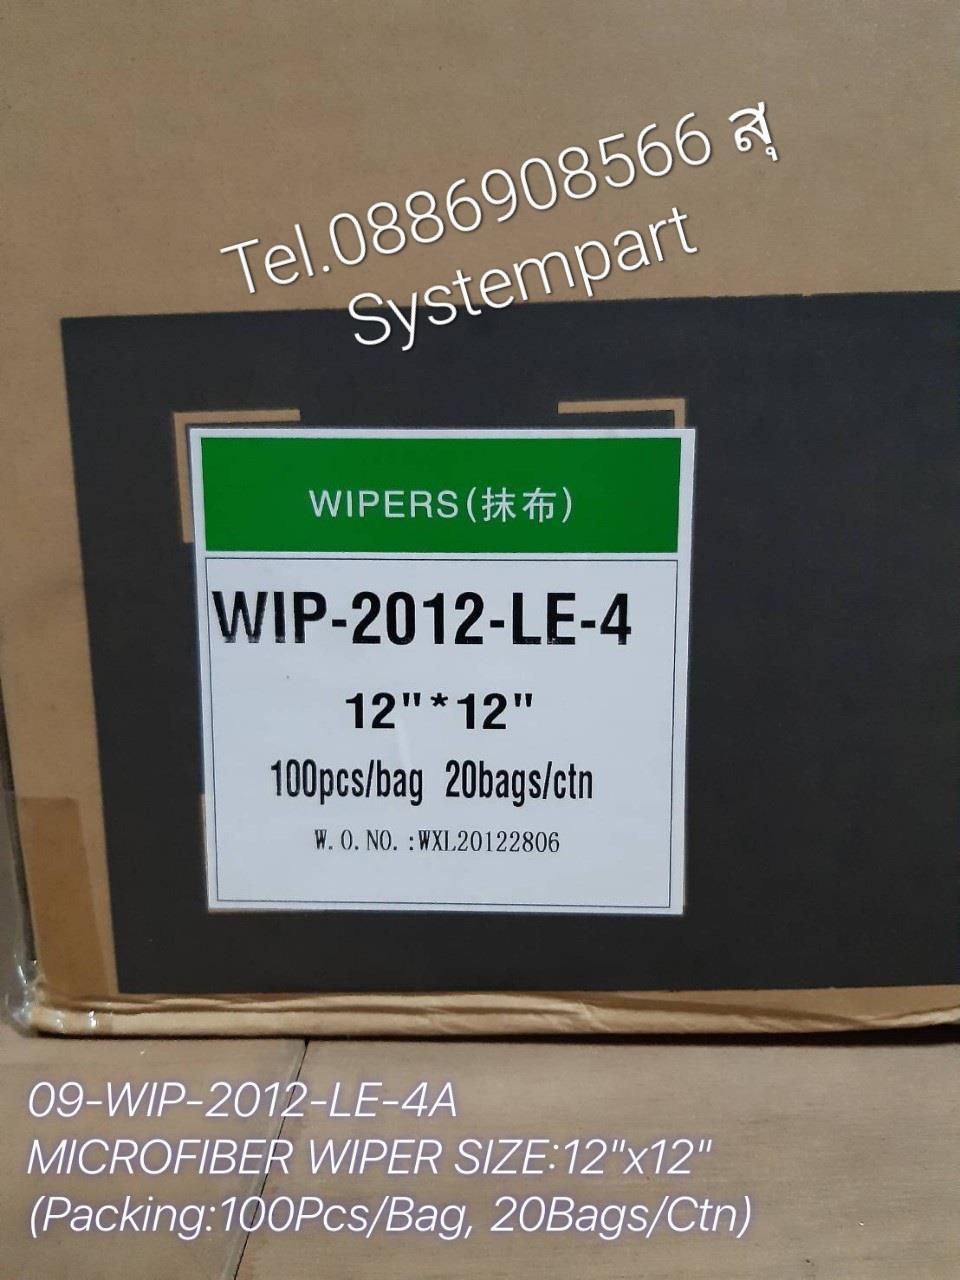 Microfiber Wiper 12" x 12"